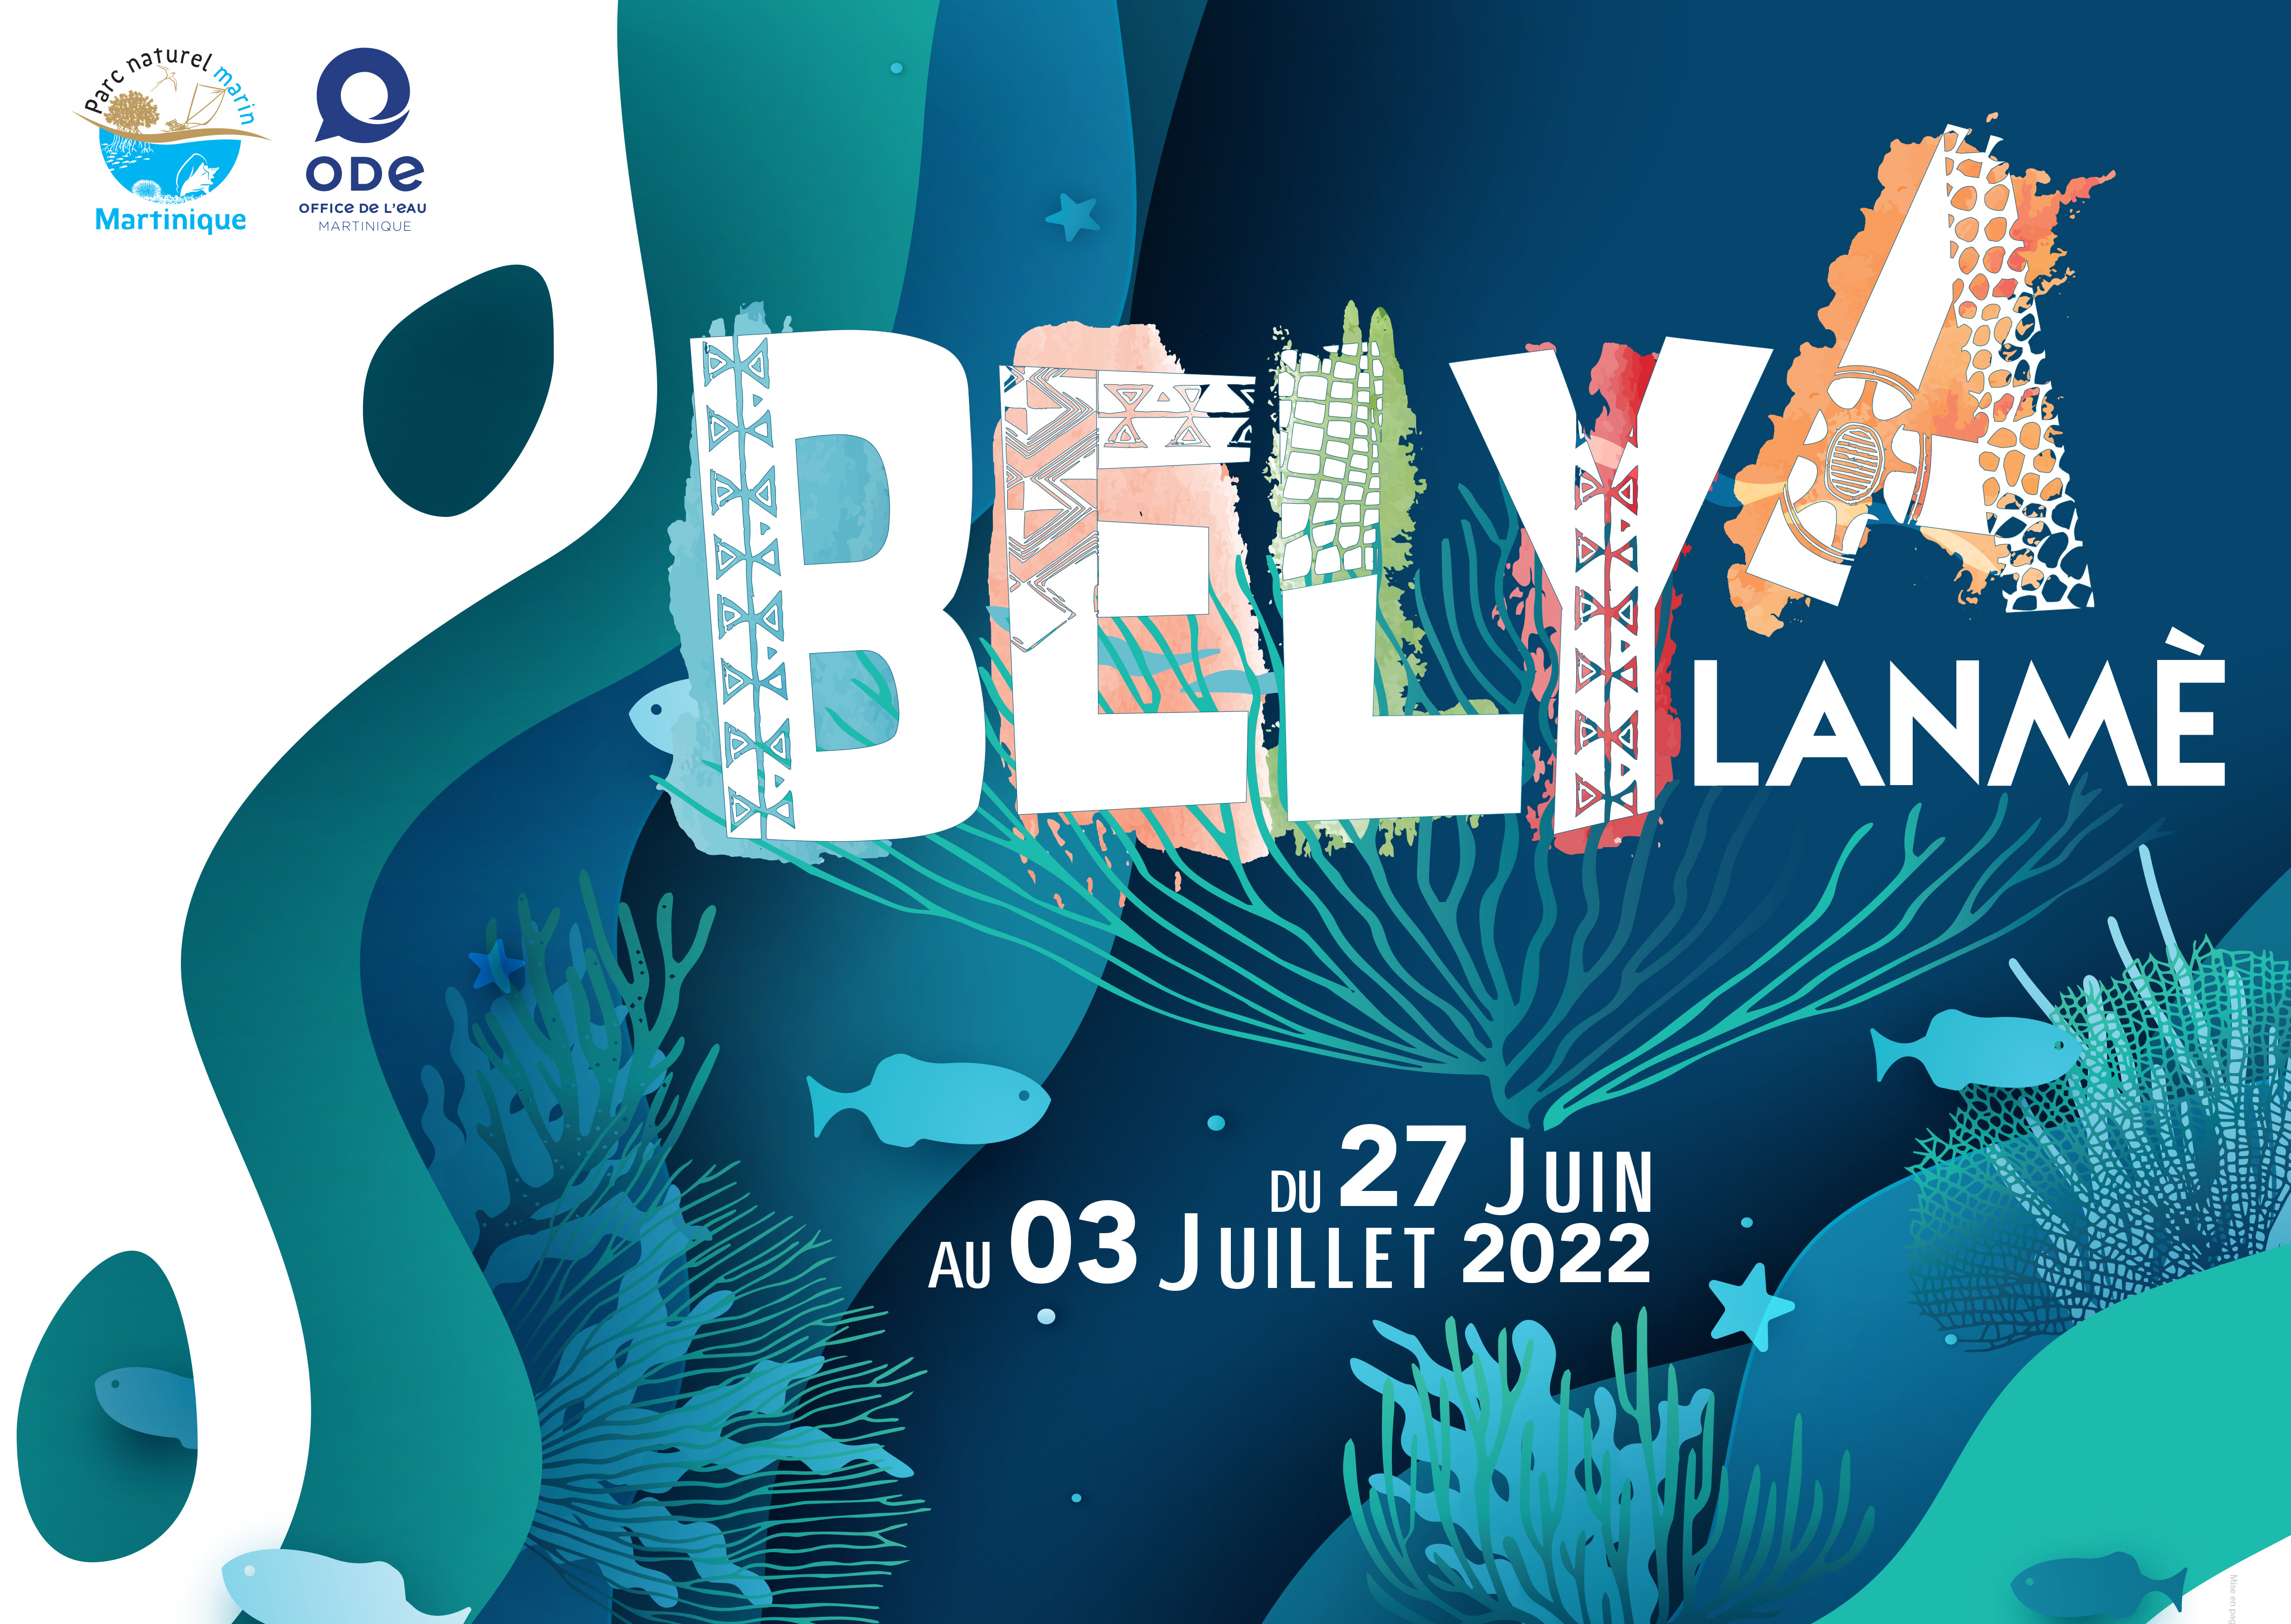     Festival de la mer : "Belya Lanmè"

